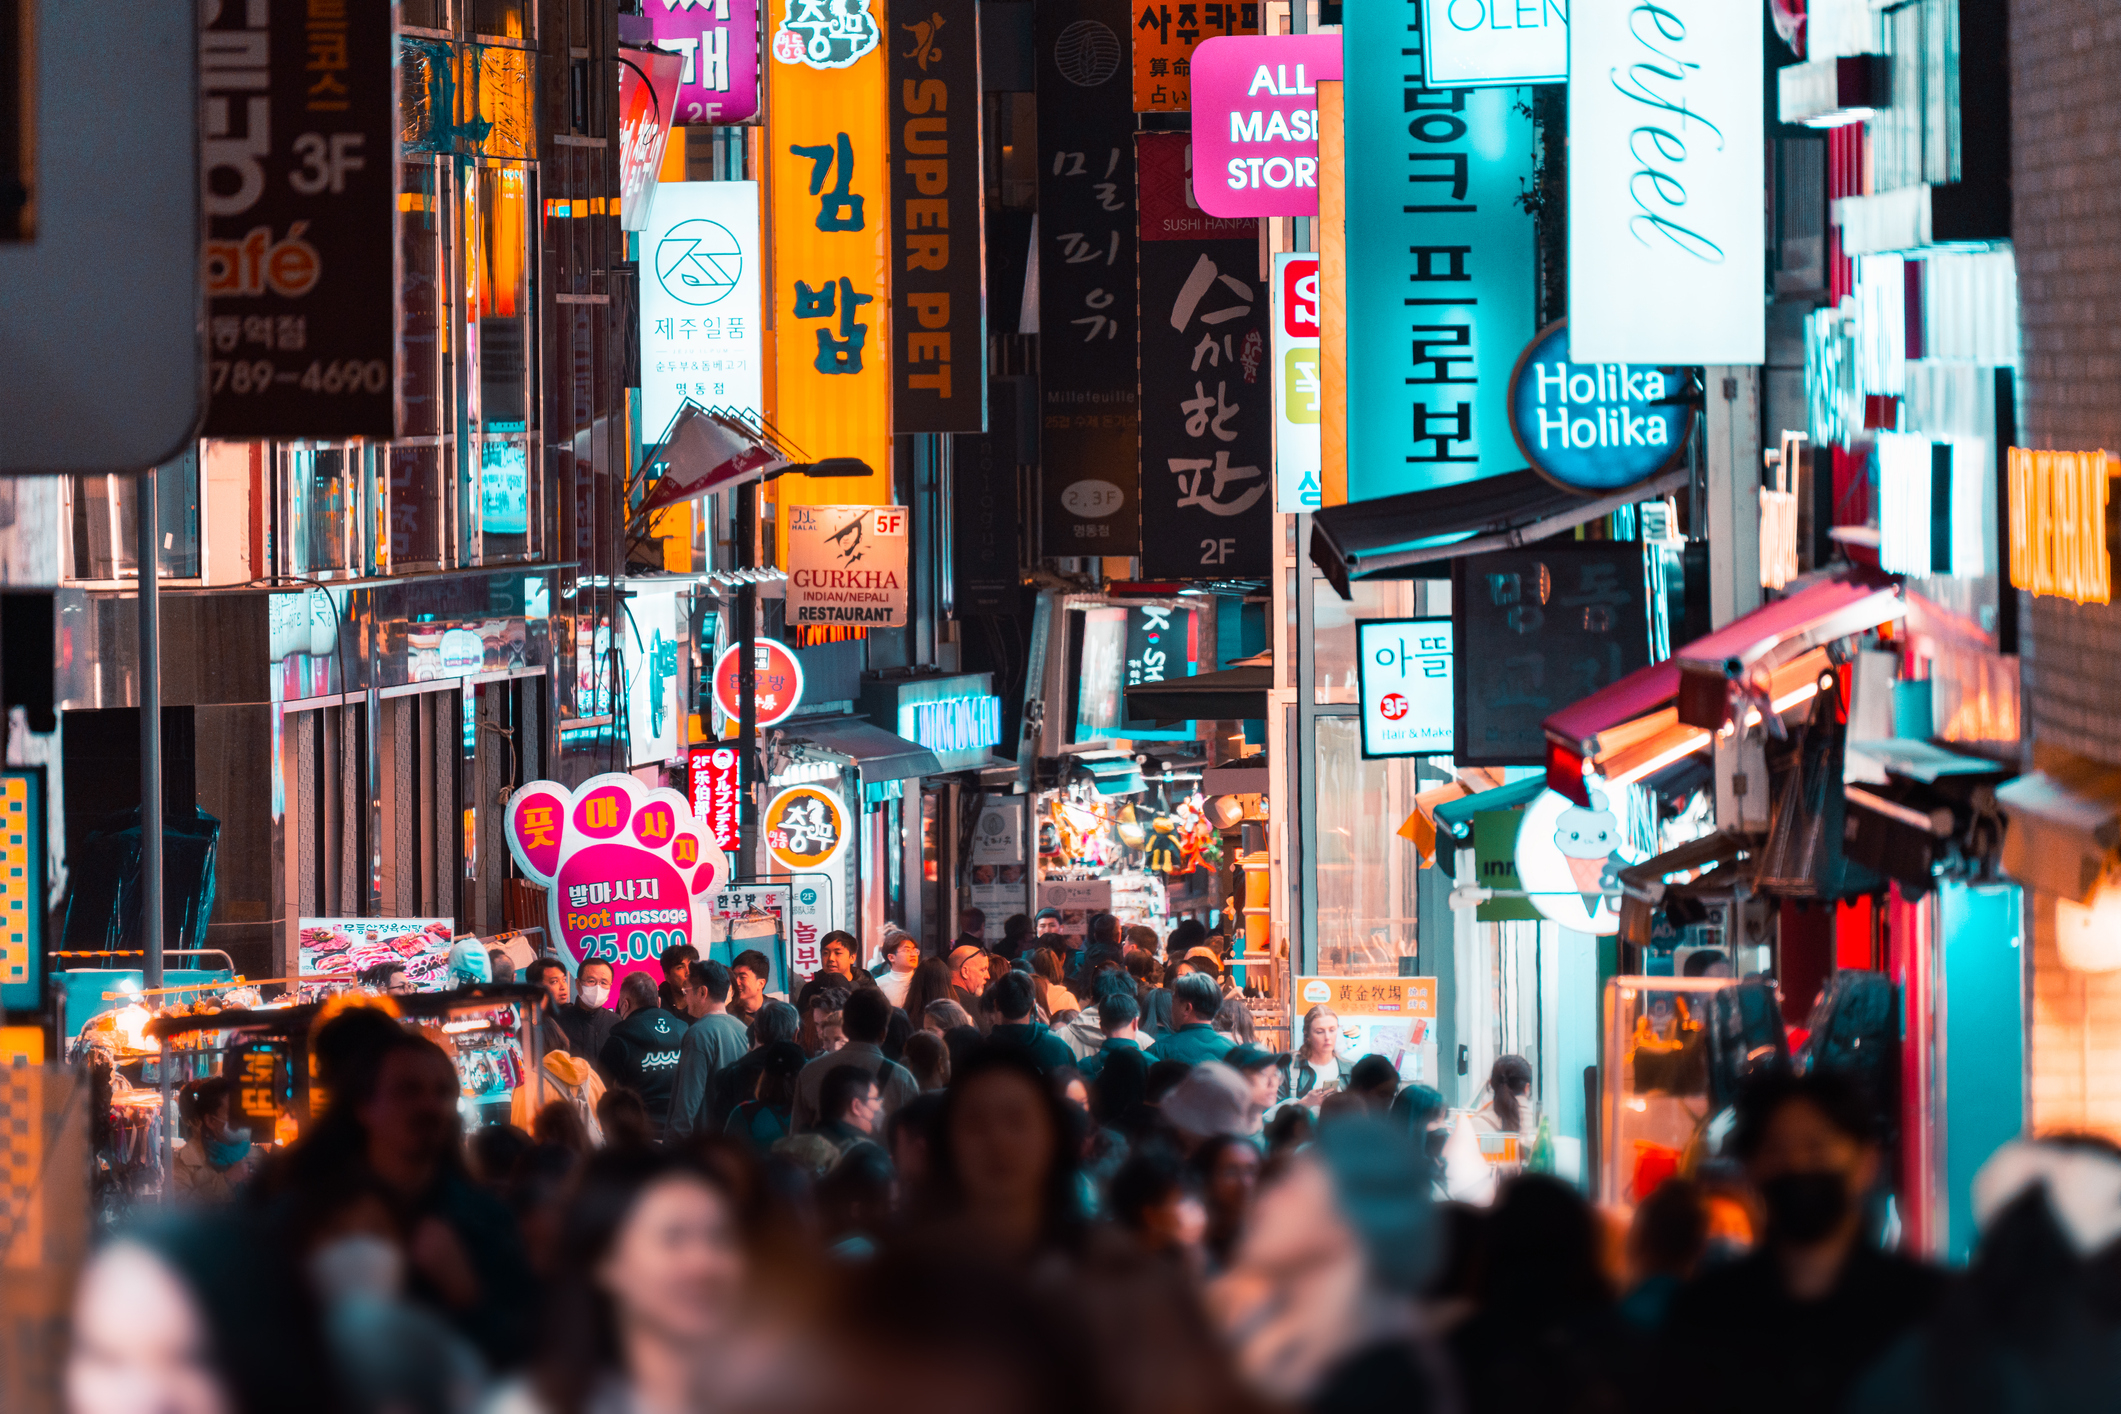 crowded street in korea